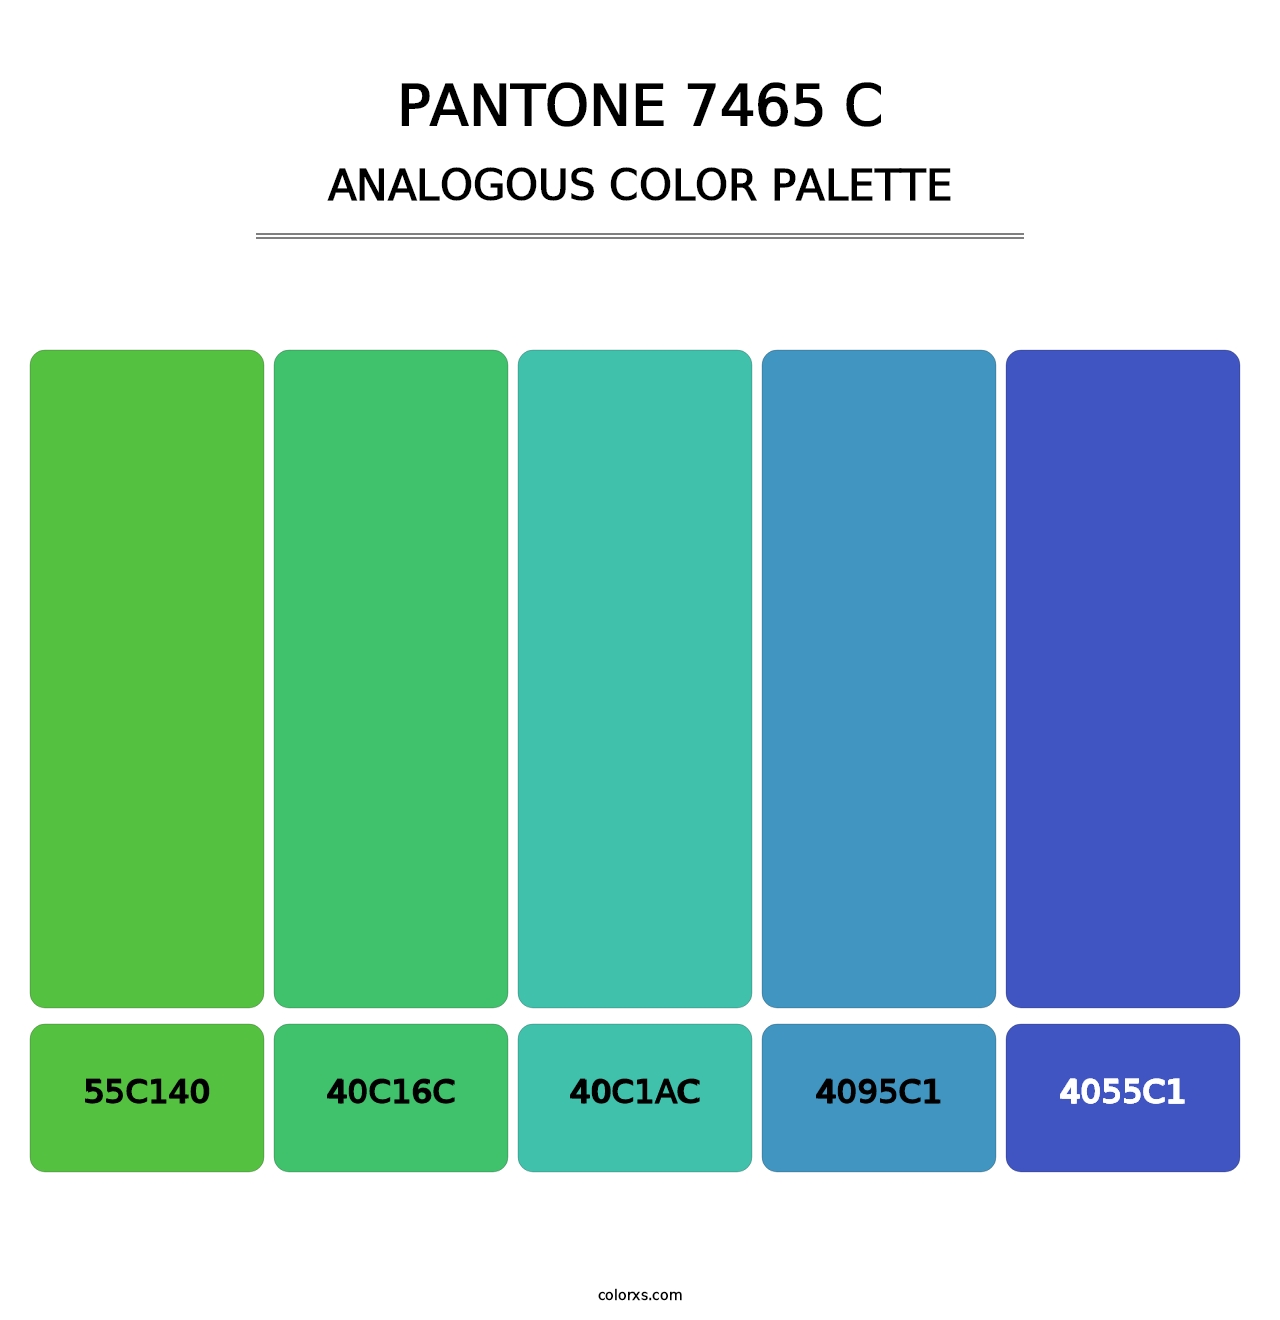 PANTONE 7465 C - Analogous Color Palette